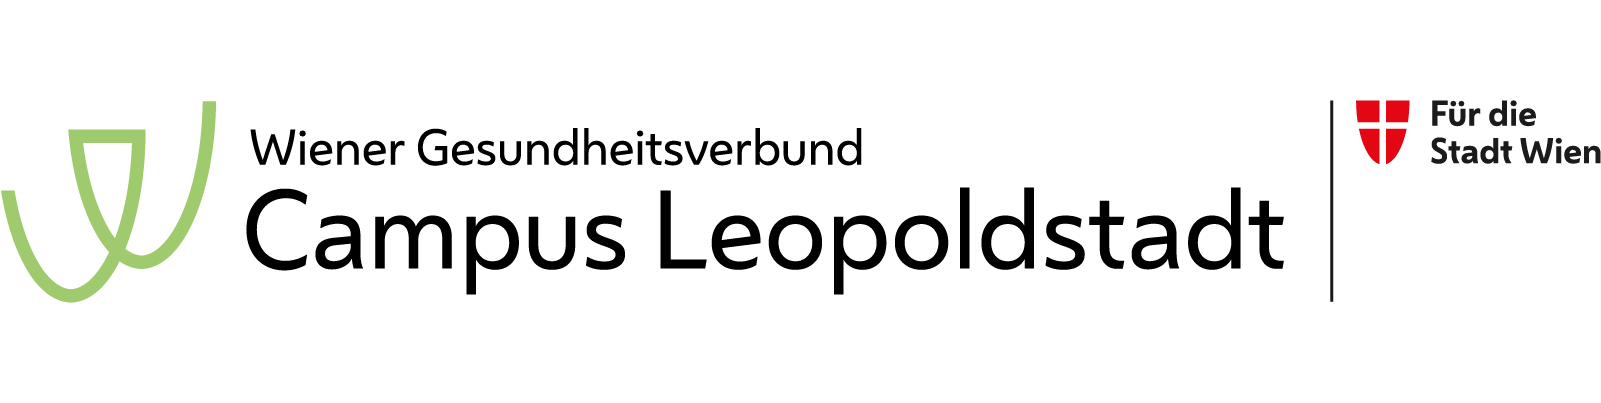 Campus-Leopoldstadt